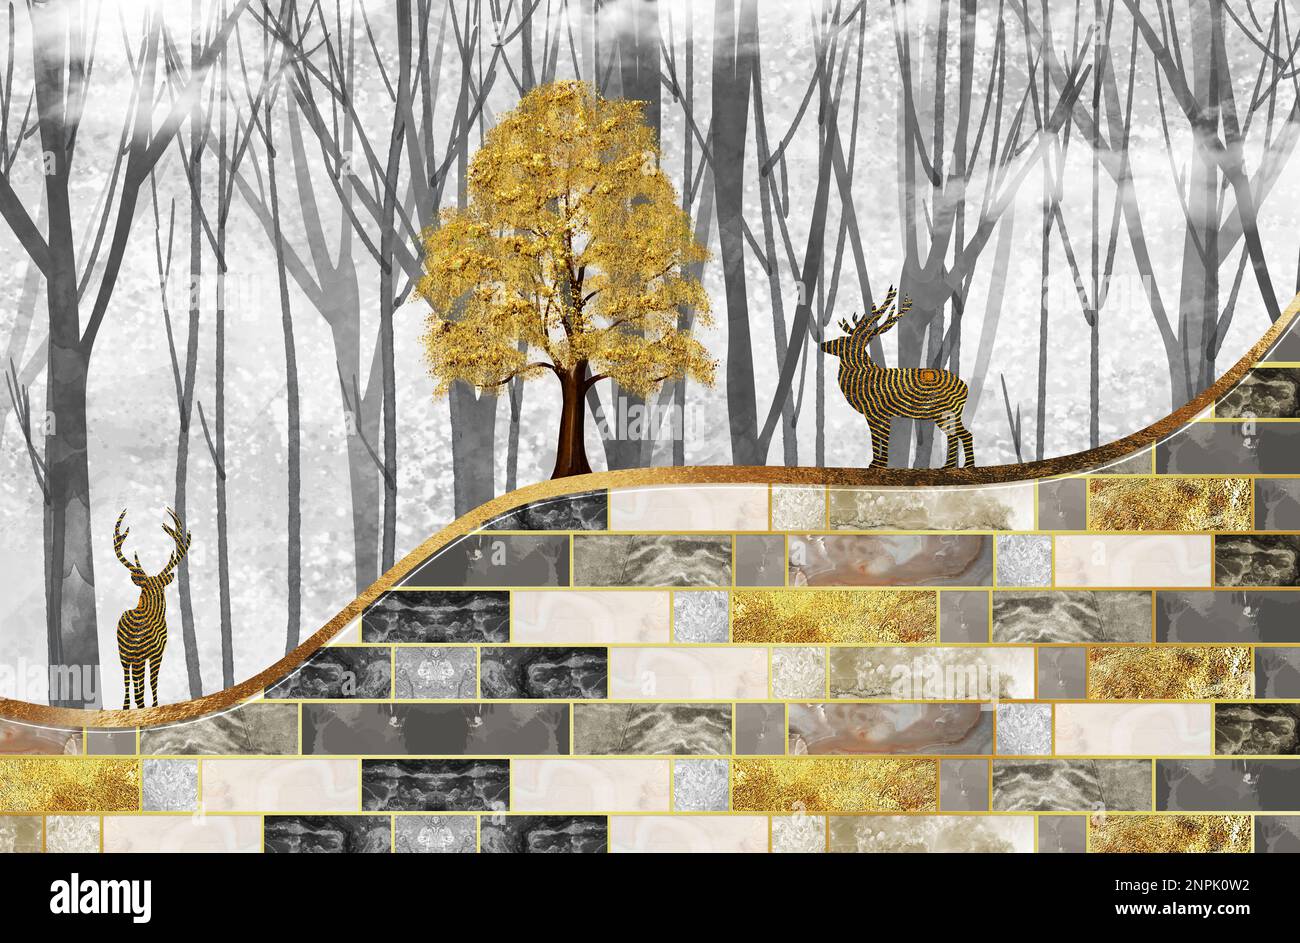 3d sfondo murale. mattoni dorati, grigi e neri. albero d'oro e cervi su sfondo floreale chiaro Foto Stock